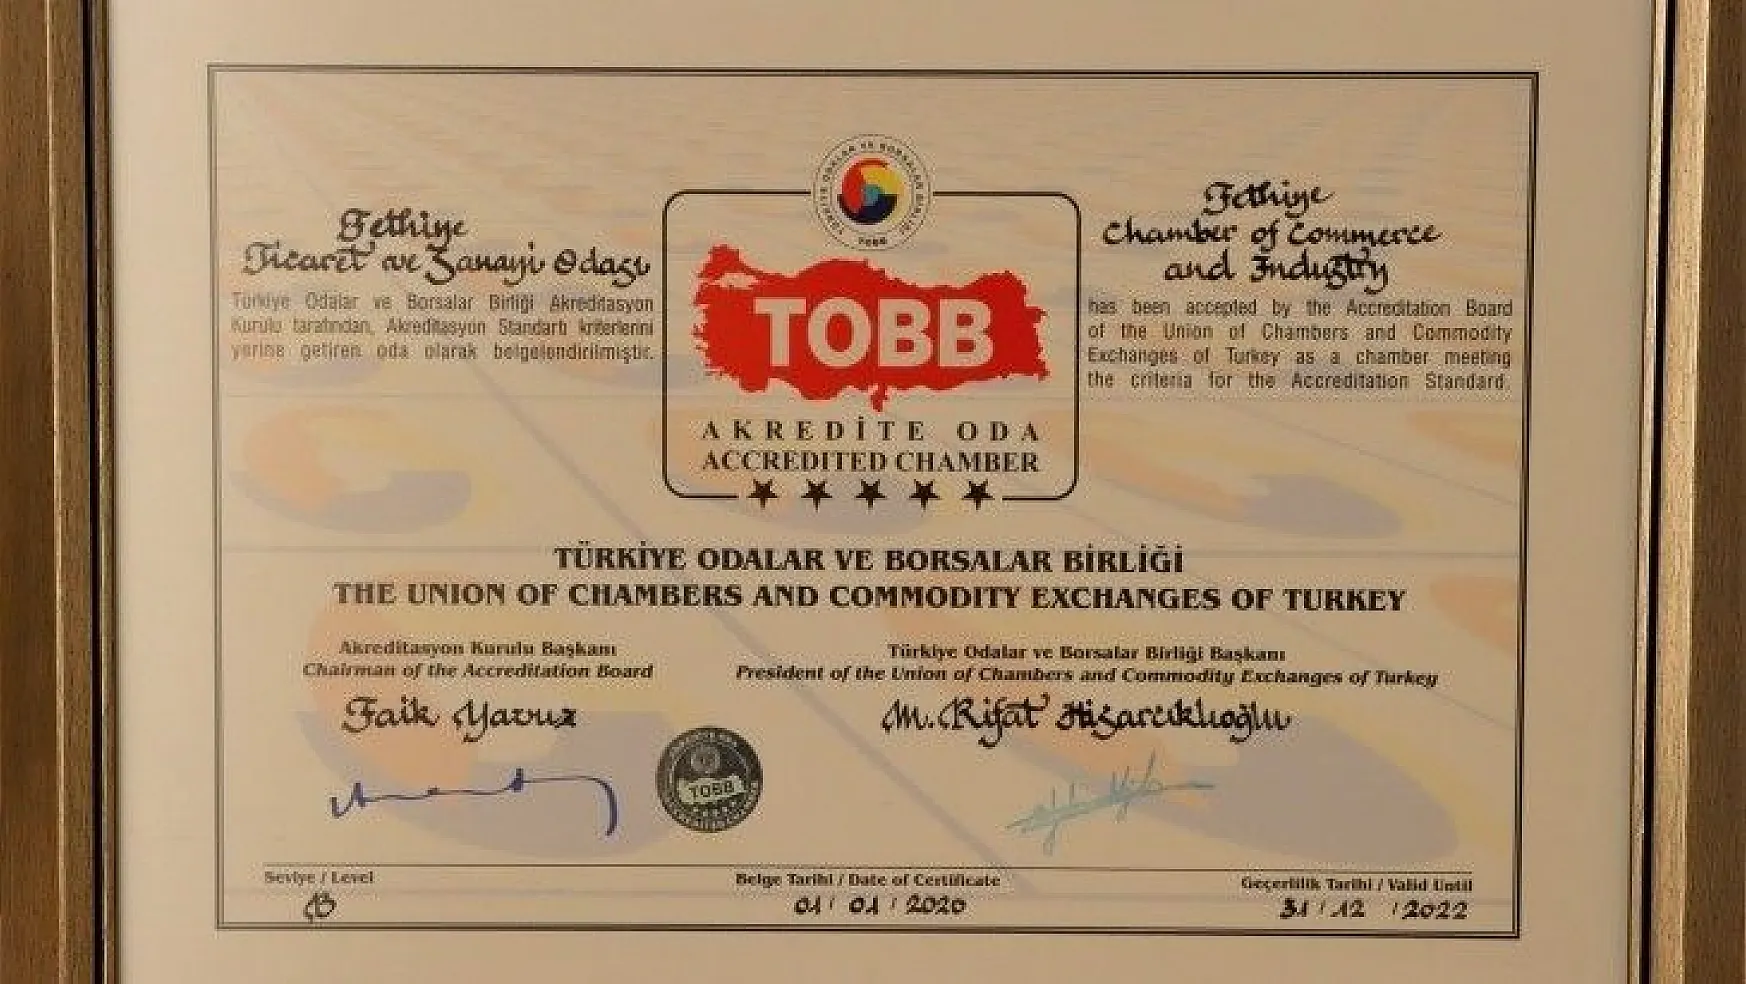 FTSO'nun TOBB akreditasyon belgesi yenilendi 